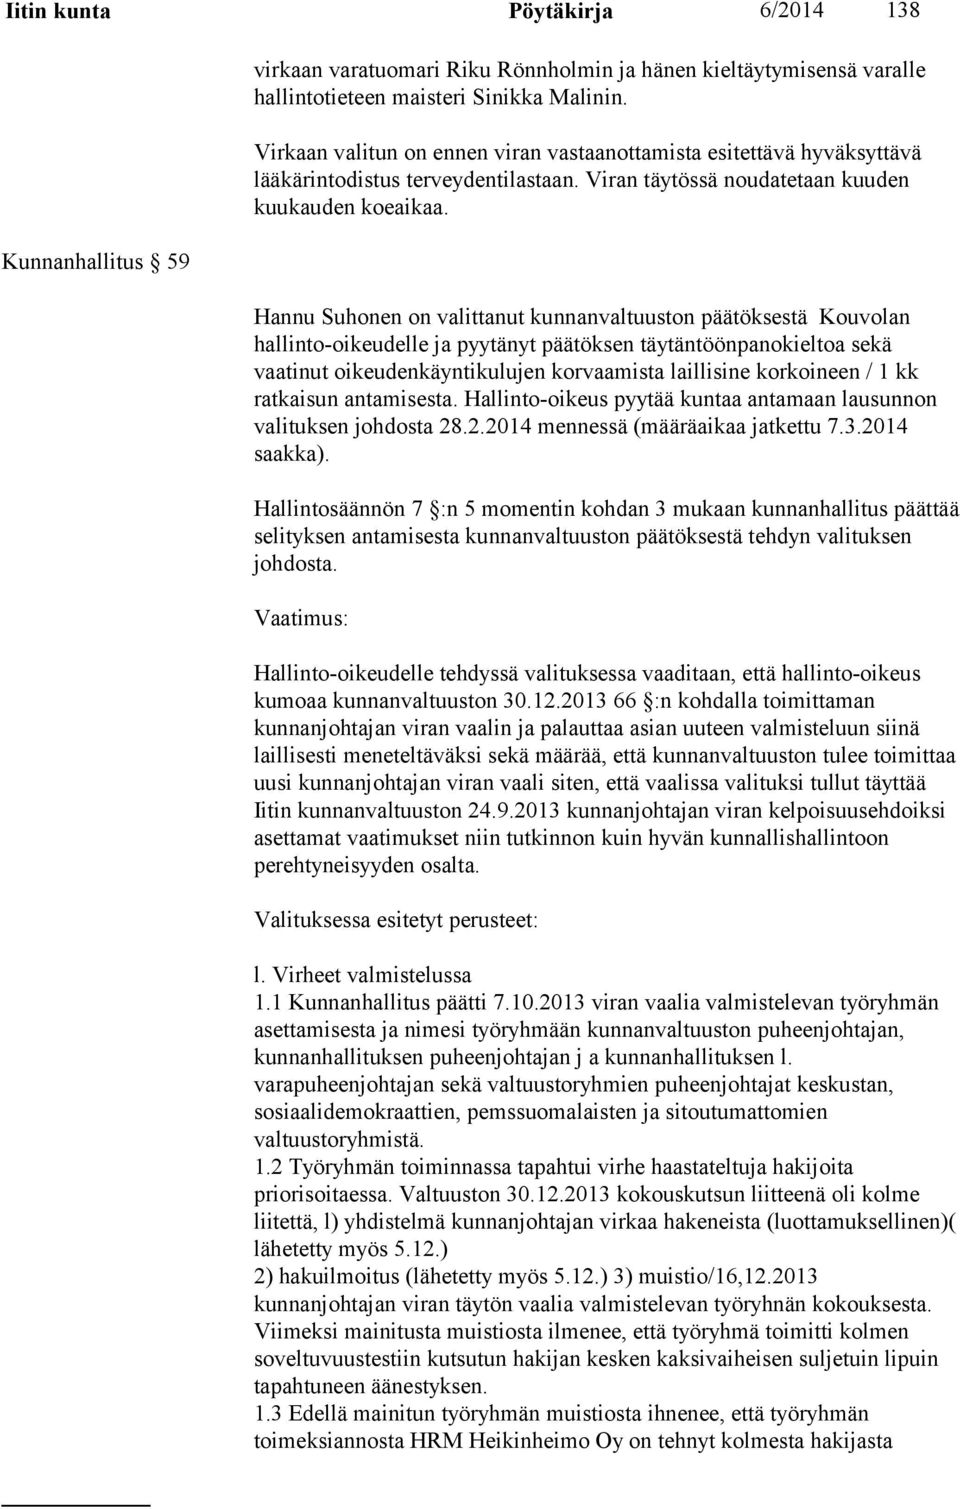 Hannu Suhonen on valittanut kunnanvaltuuston päätöksestä Kouvolan hallinto-oikeudelle ja pyytänyt päätöksen täytäntöönpanokieltoa sekä vaatinut oikeudenkäyntikulujen korvaamista laillisine korkoineen